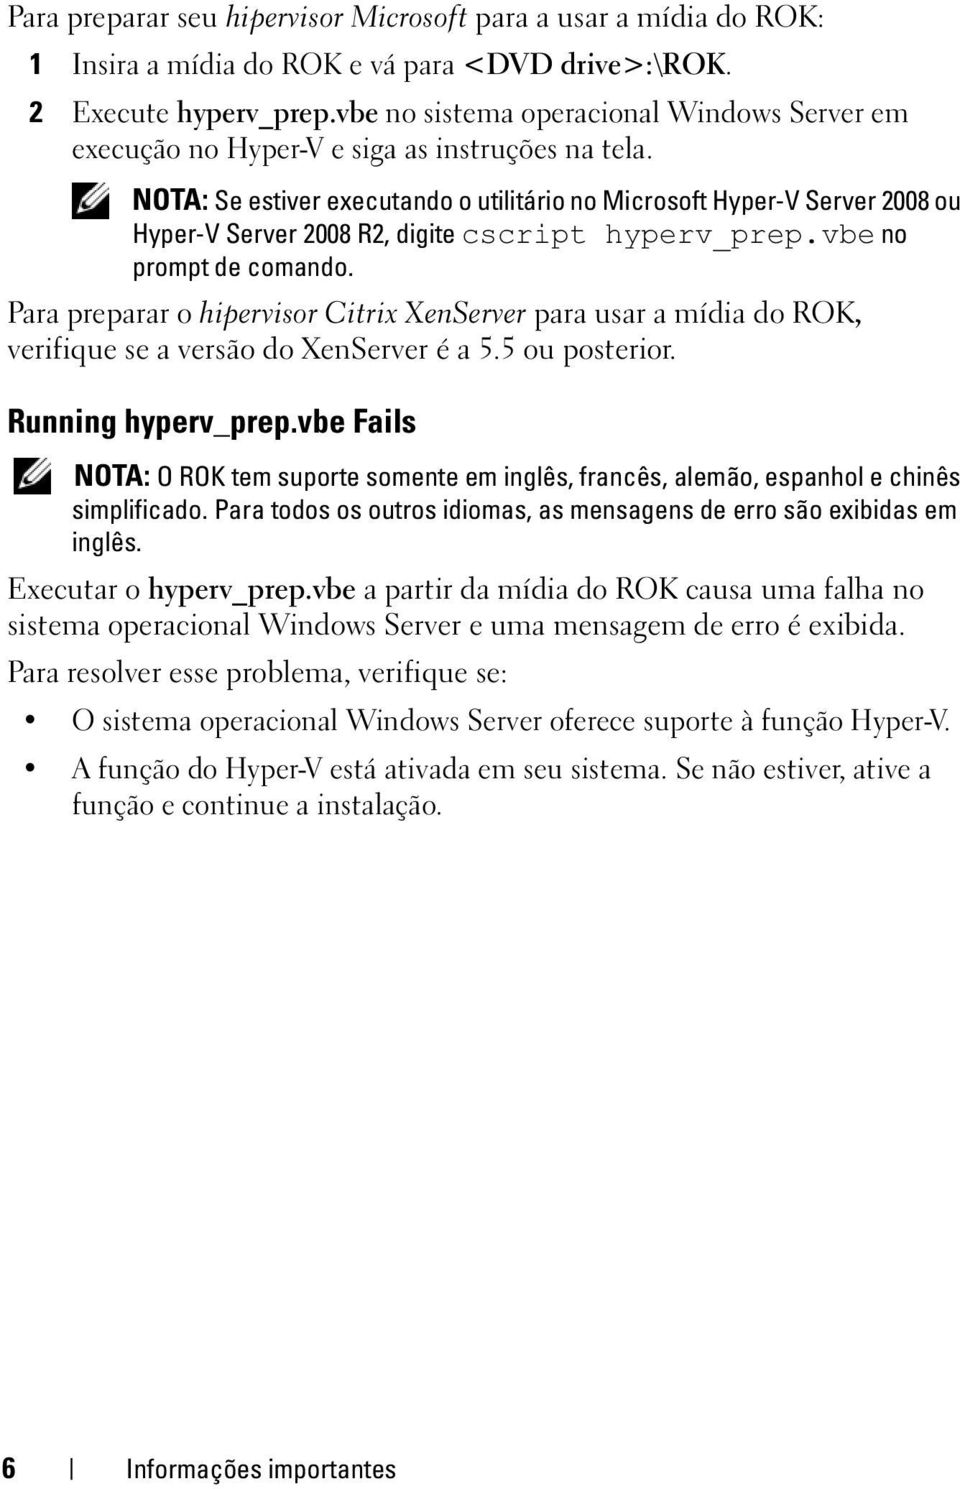 NOTA: Se estiver executando o utilitário no Microsoft Hyper-V Server 2008 ou Hyper-V Server 2008 R2, digite cscript hyperv_prep.vbe no prompt de comando.